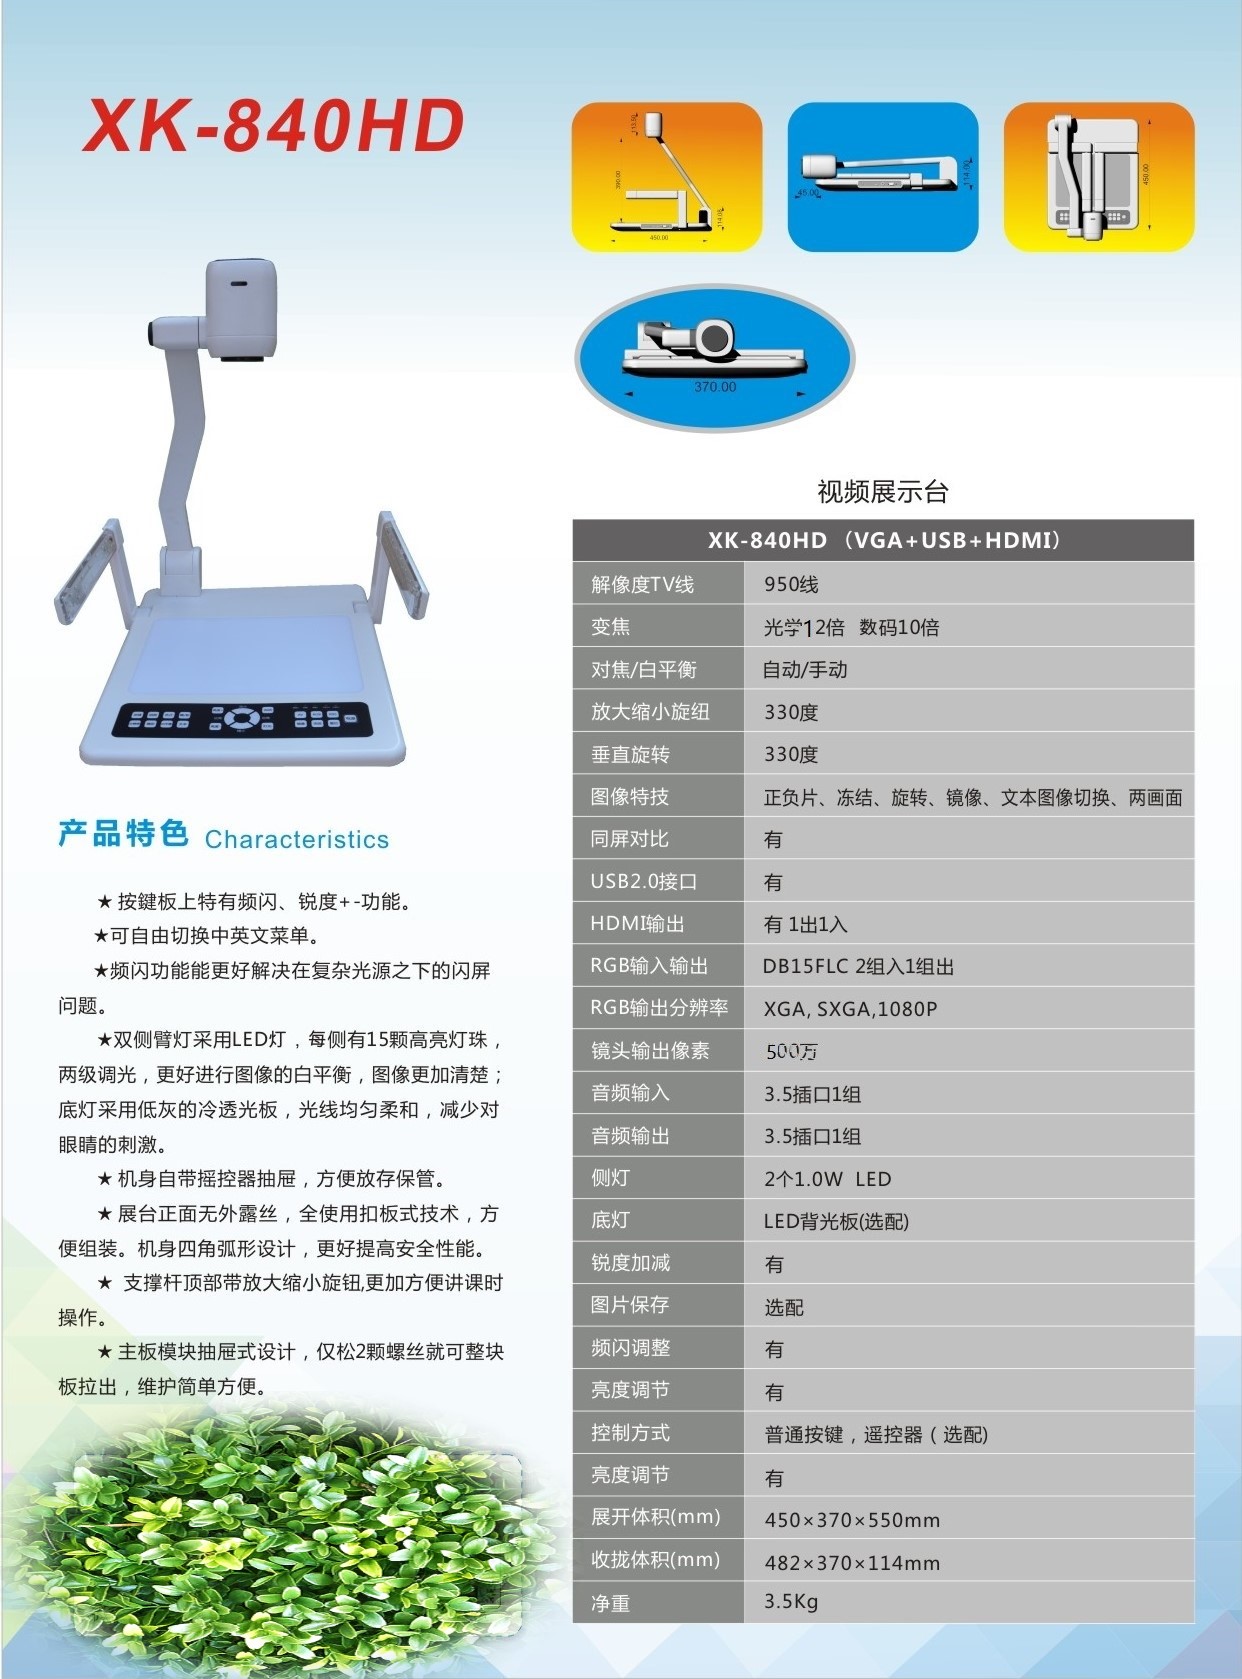 广州市仙科教育科技有限公司